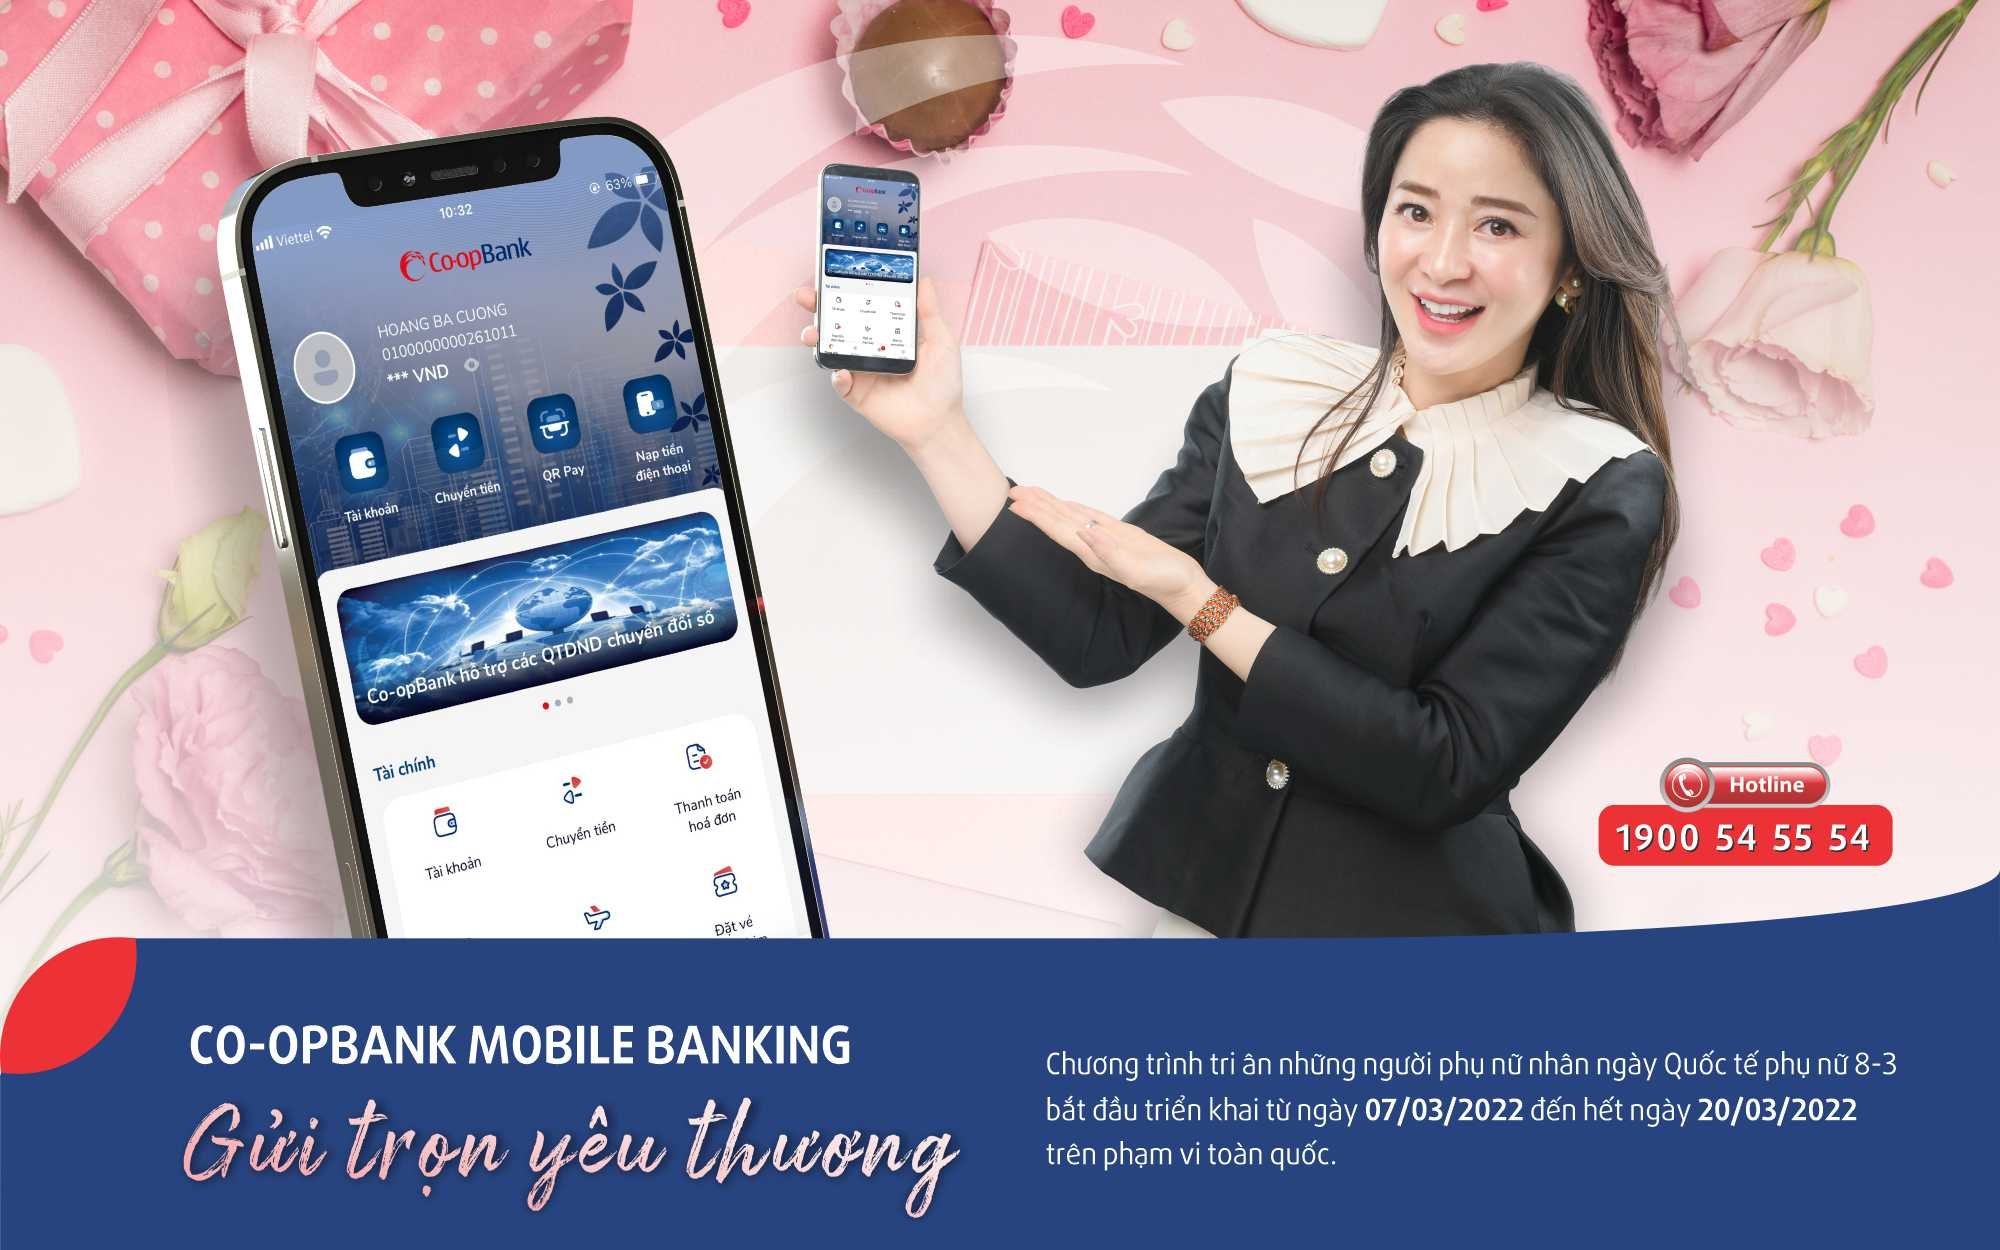 “Co-opBank Mobile Banking - Gửi trọn yêu thương”